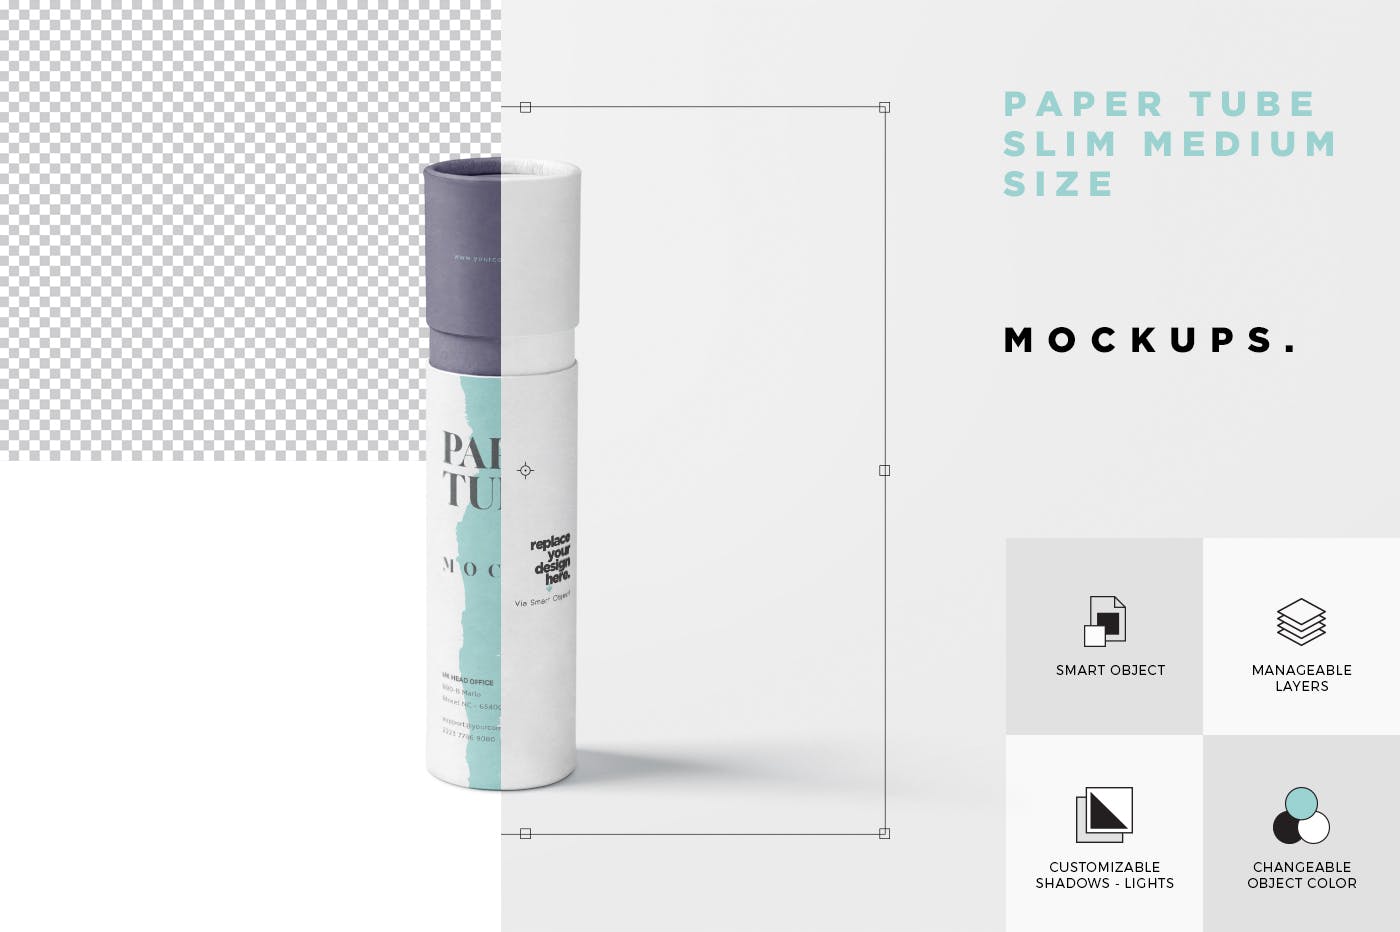 长纸管包装外观设计第一素材精选模板 Paper Tube Mockup Set – Slim Medium Size插图(6)